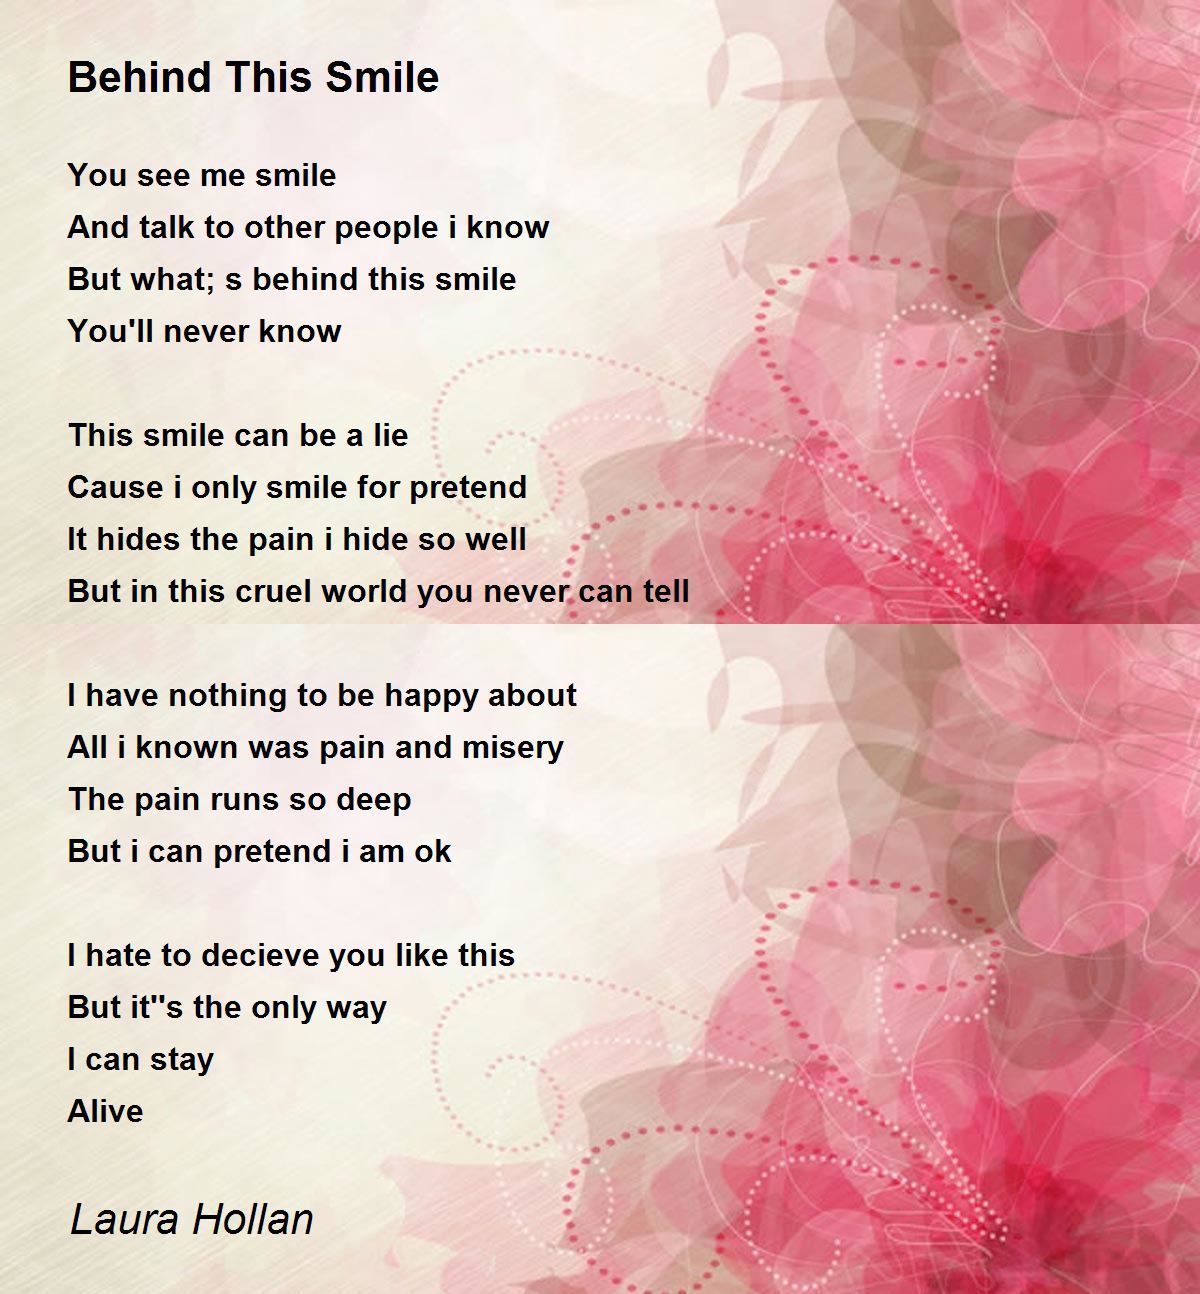 Behind This Smile - Behind This Smile Poem by Laura Hollan